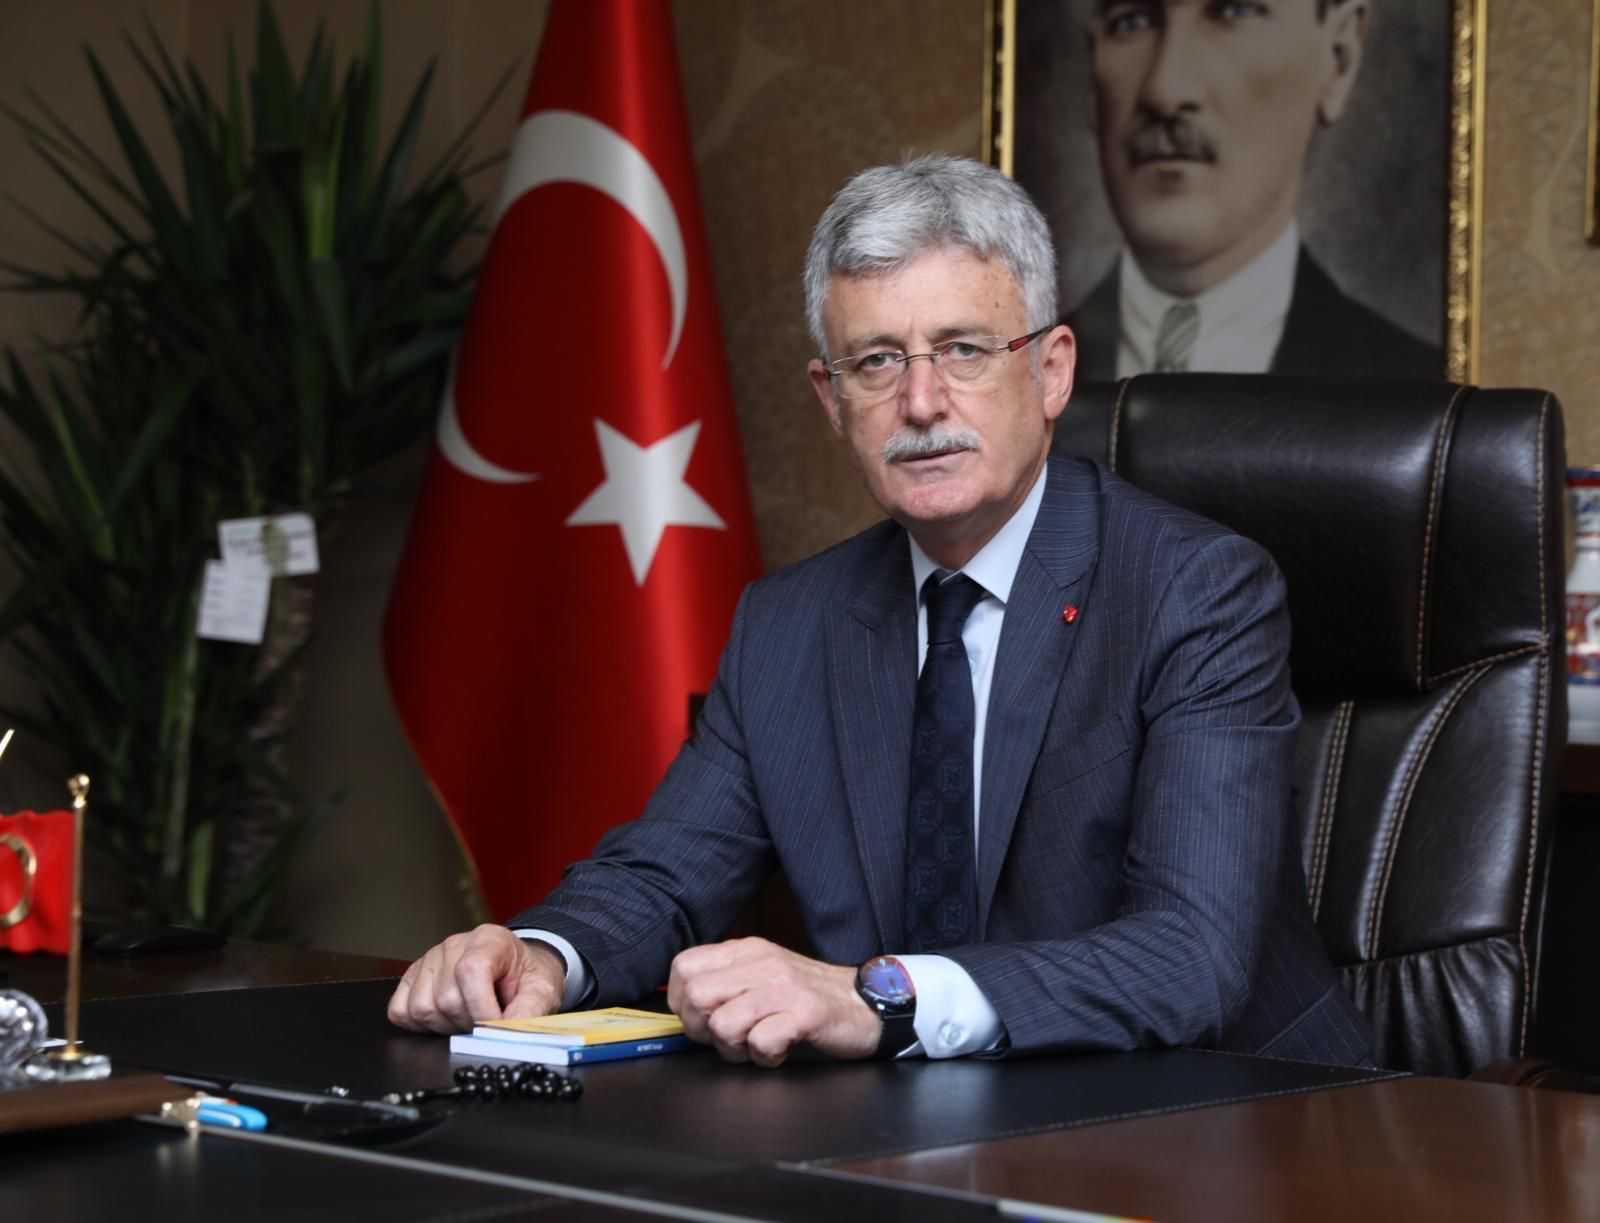 Ellibeş’ten ihtiyaç sahibi ailelere çağrı: “Türkiye Aile Destek Programıyla  Devletimiz yine vatandaşın yanında” 